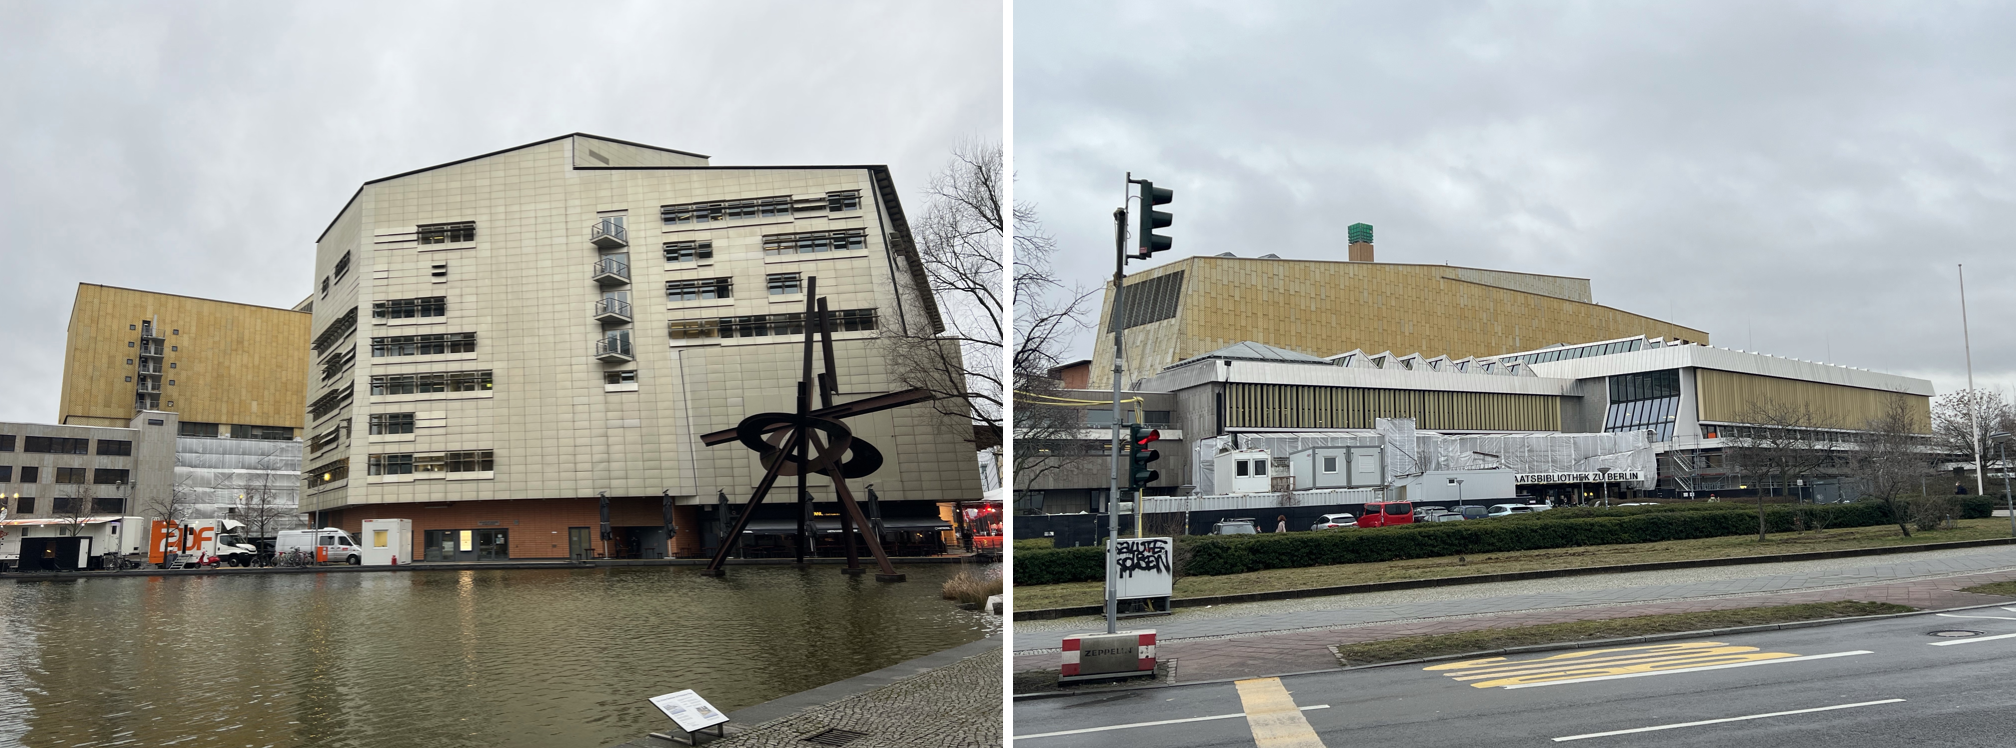 batiments modernes a berlin